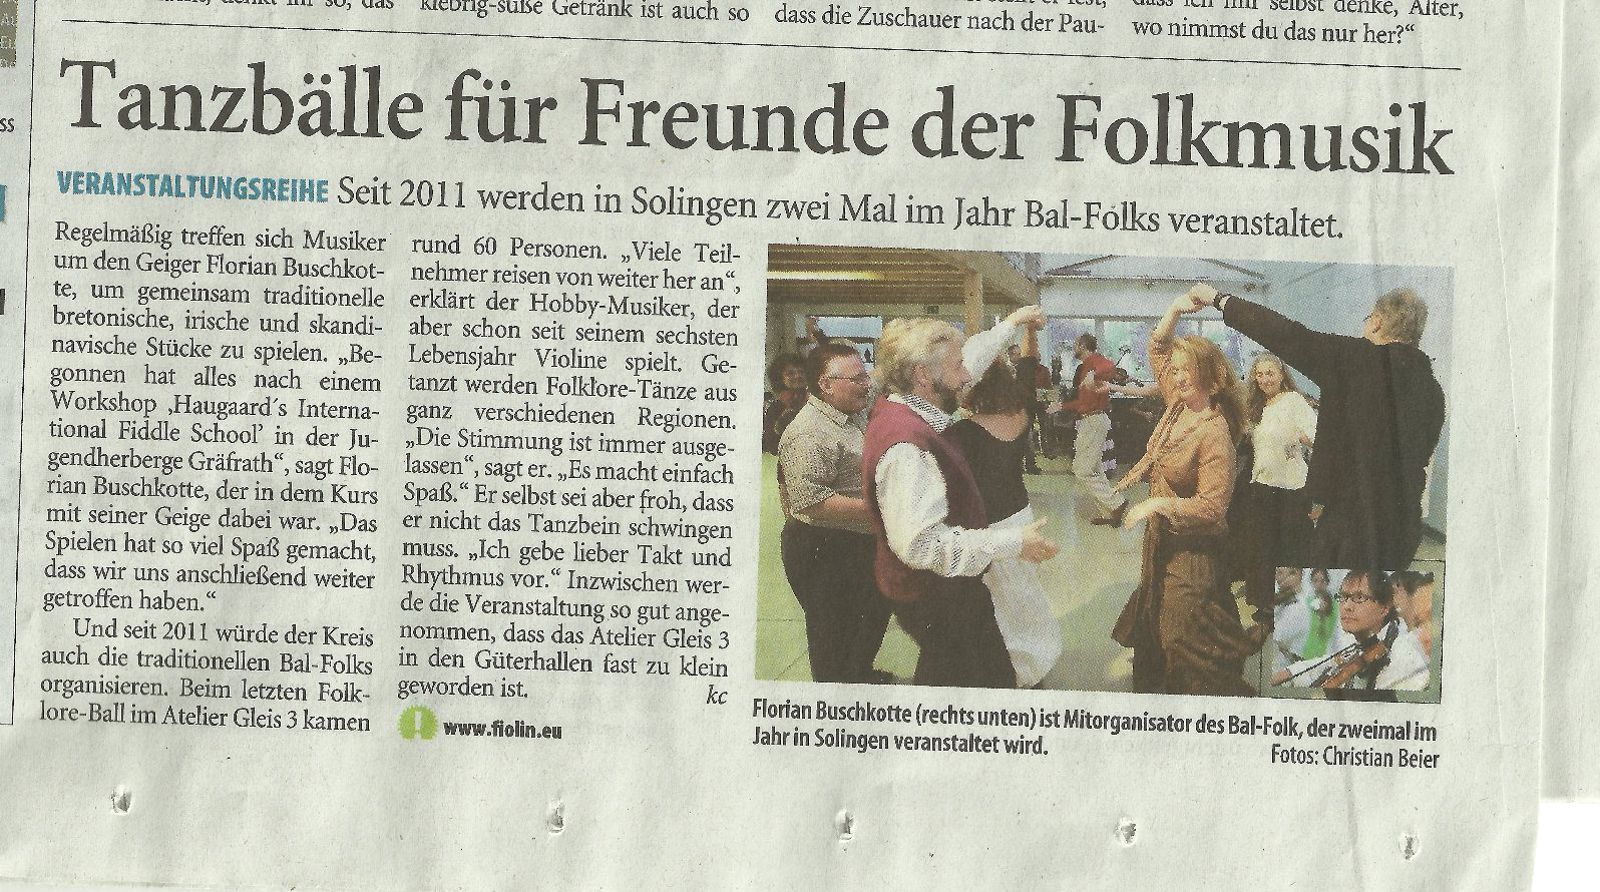 http://www.solinger-tageblatt.de/Home/Solingen/Kultur/Tanzbaelle-fuer-Freunde-der-Folkmusik-6acac0fa-8598-448e-ac9b-7b0d1cdcfd10-ds